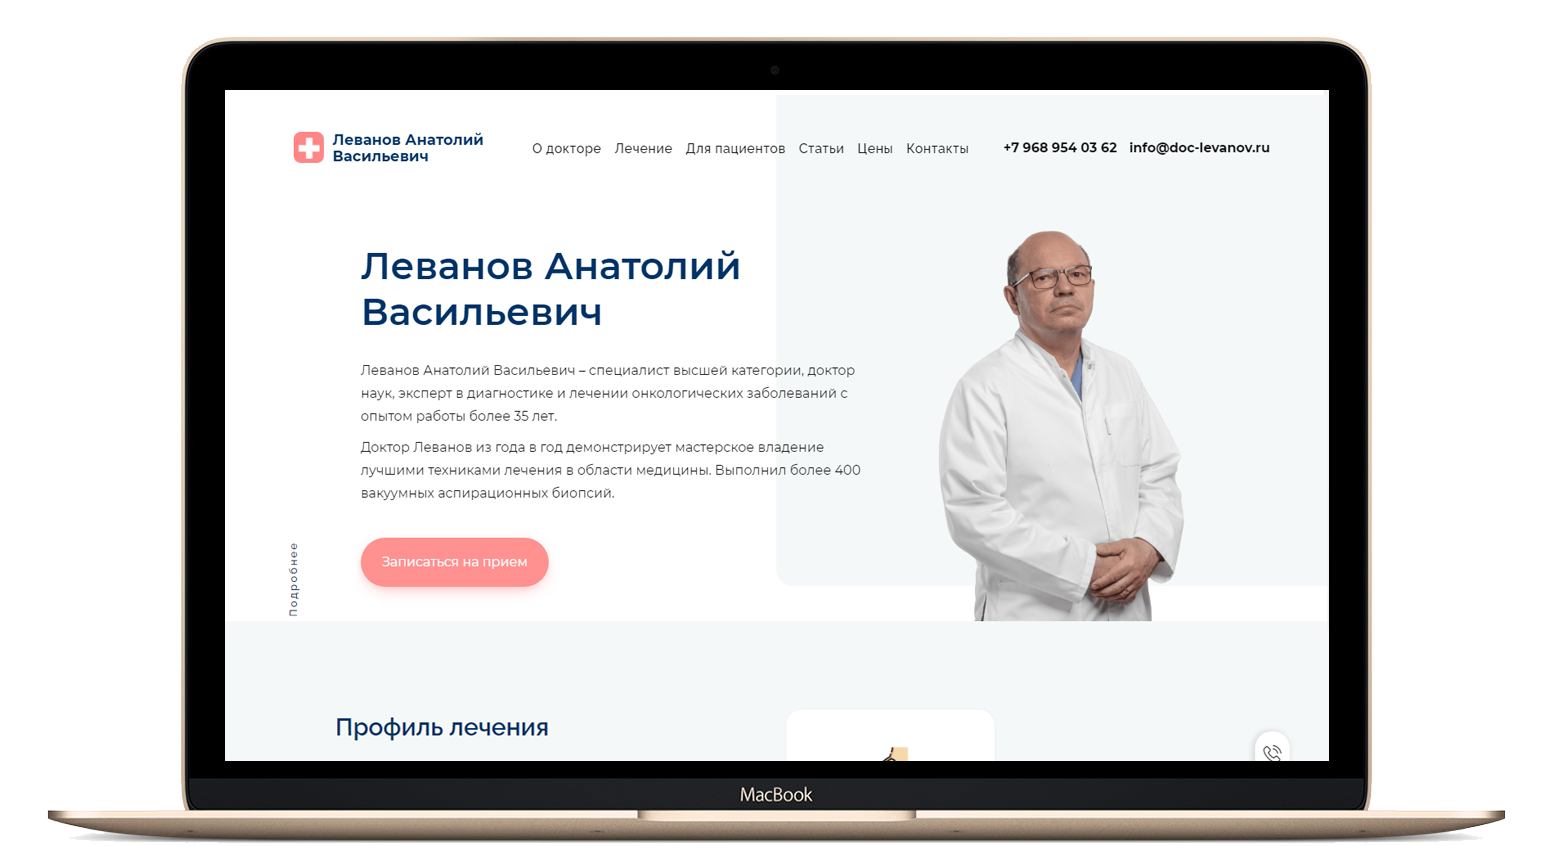 Анализ услуги вакуумная аспирационная биопсия под руководством Анатолия Леванова для продвижения